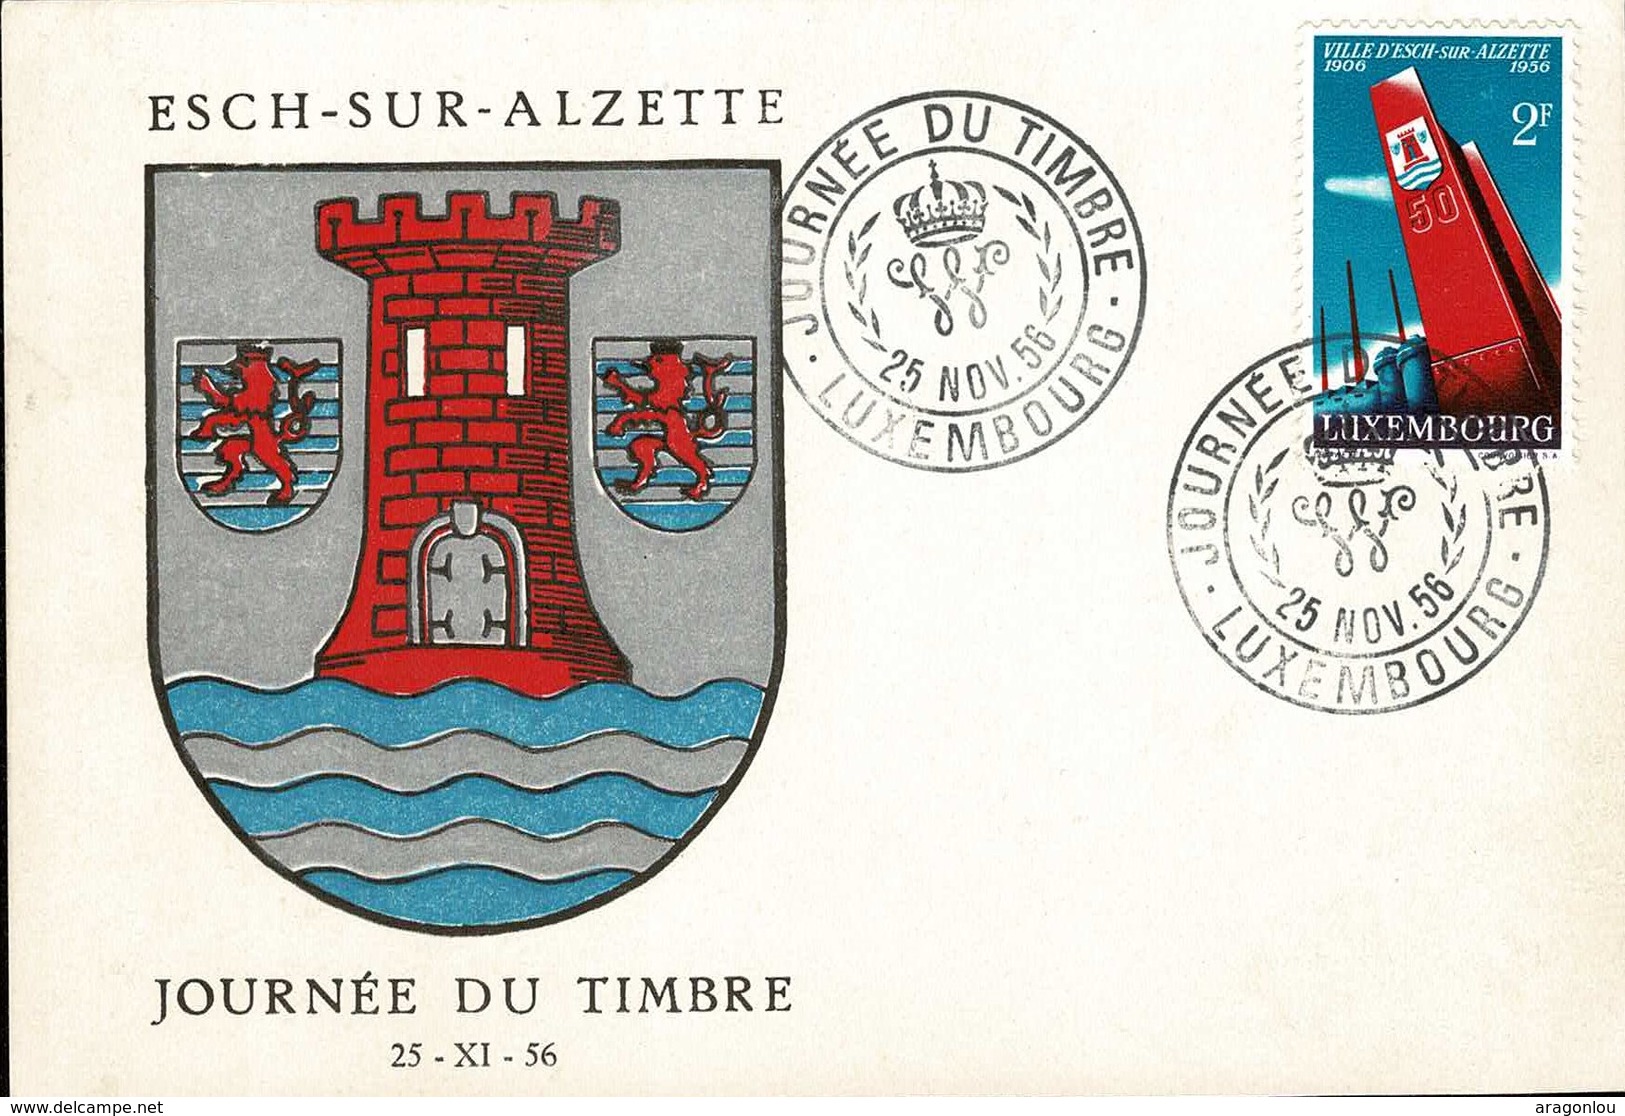 Journée Du Timbre Esch-sur-Alzette 25.11.1956 Cachet Spécial: Michel: 551 - Enteros Postales